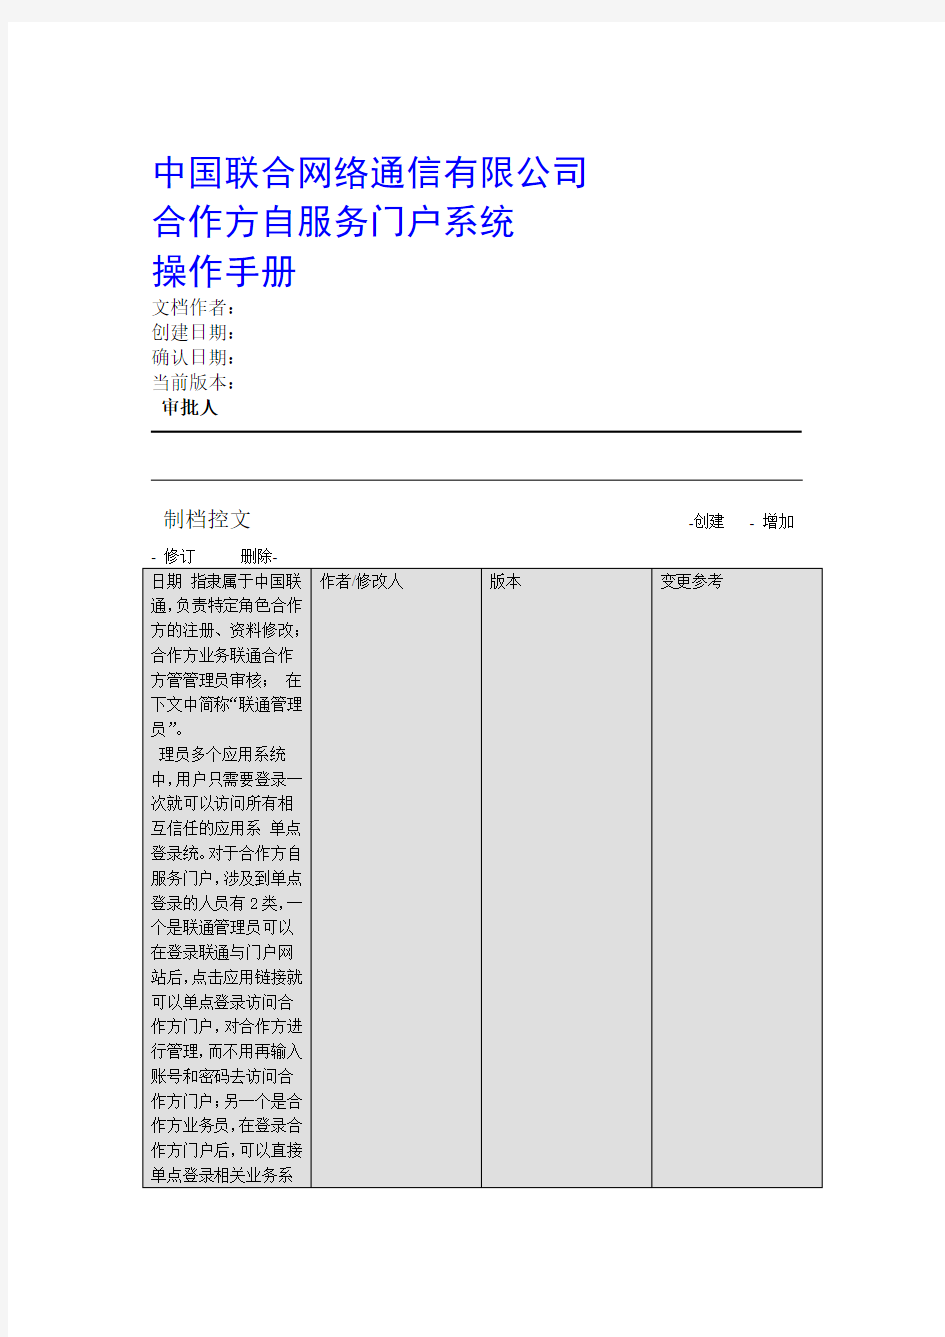 中国联通合作方自服务门户系统操作手册 合作方人员操作